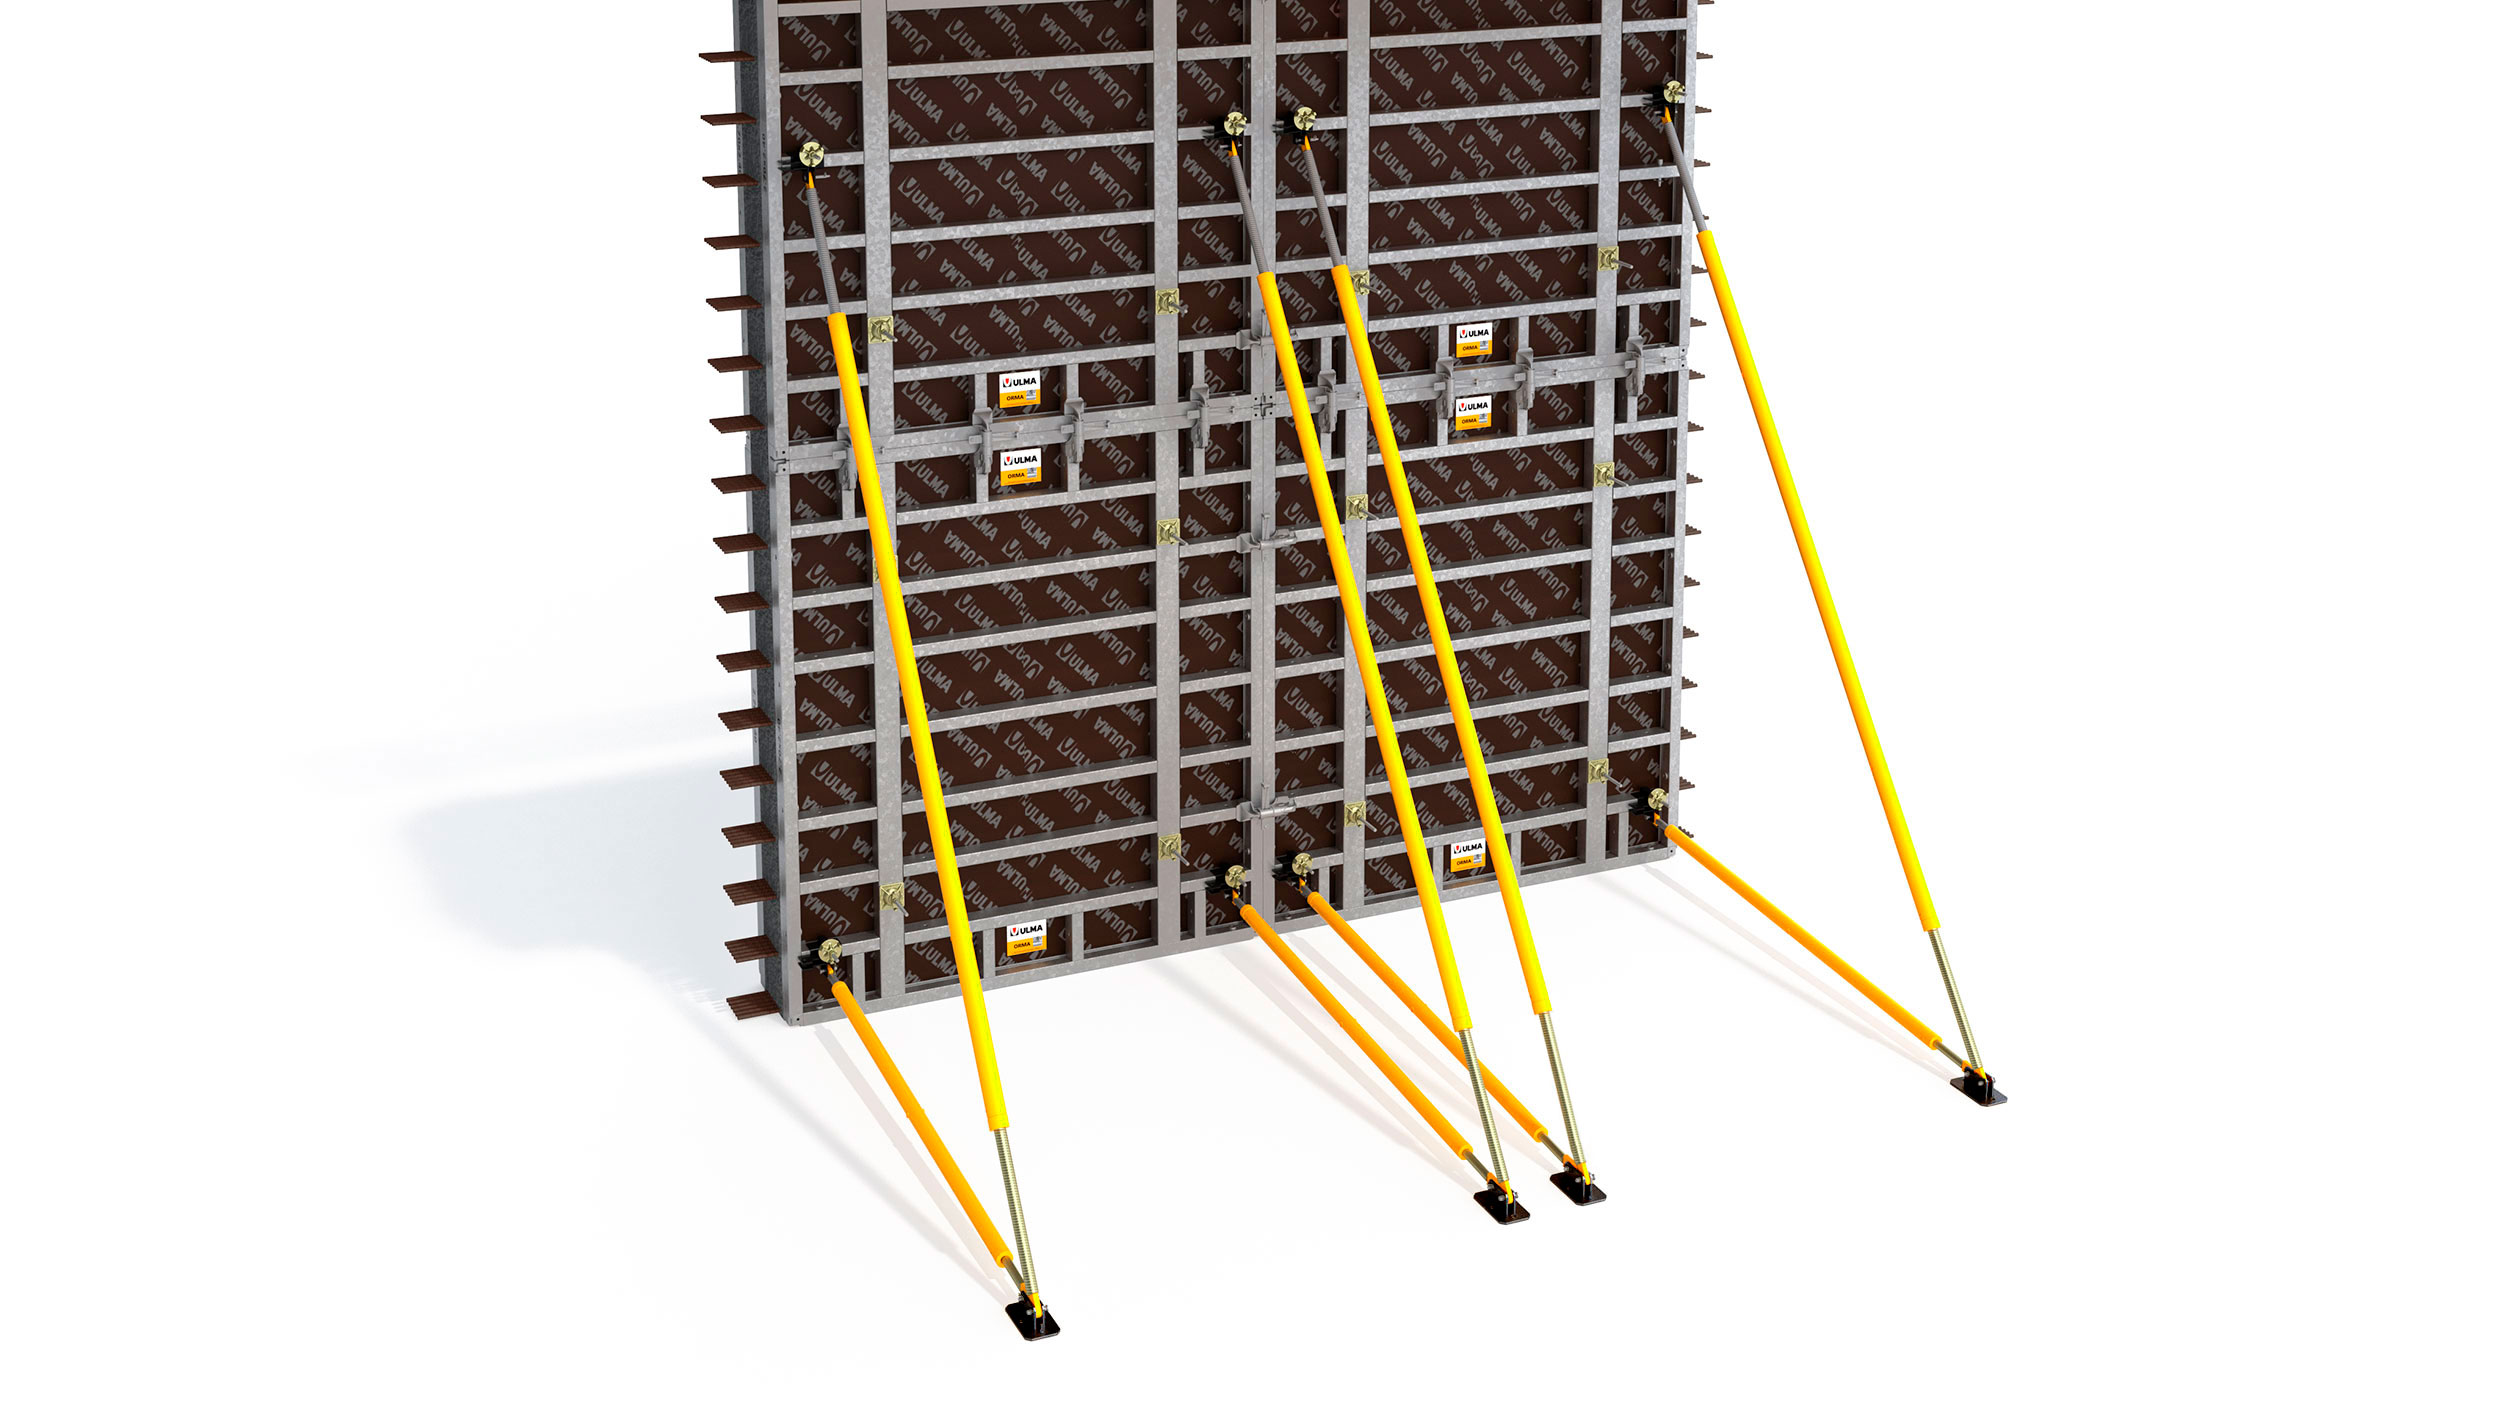 Ampla variedade de estabilizadores para alinhamento e suporte dos conjuntos de painéis.